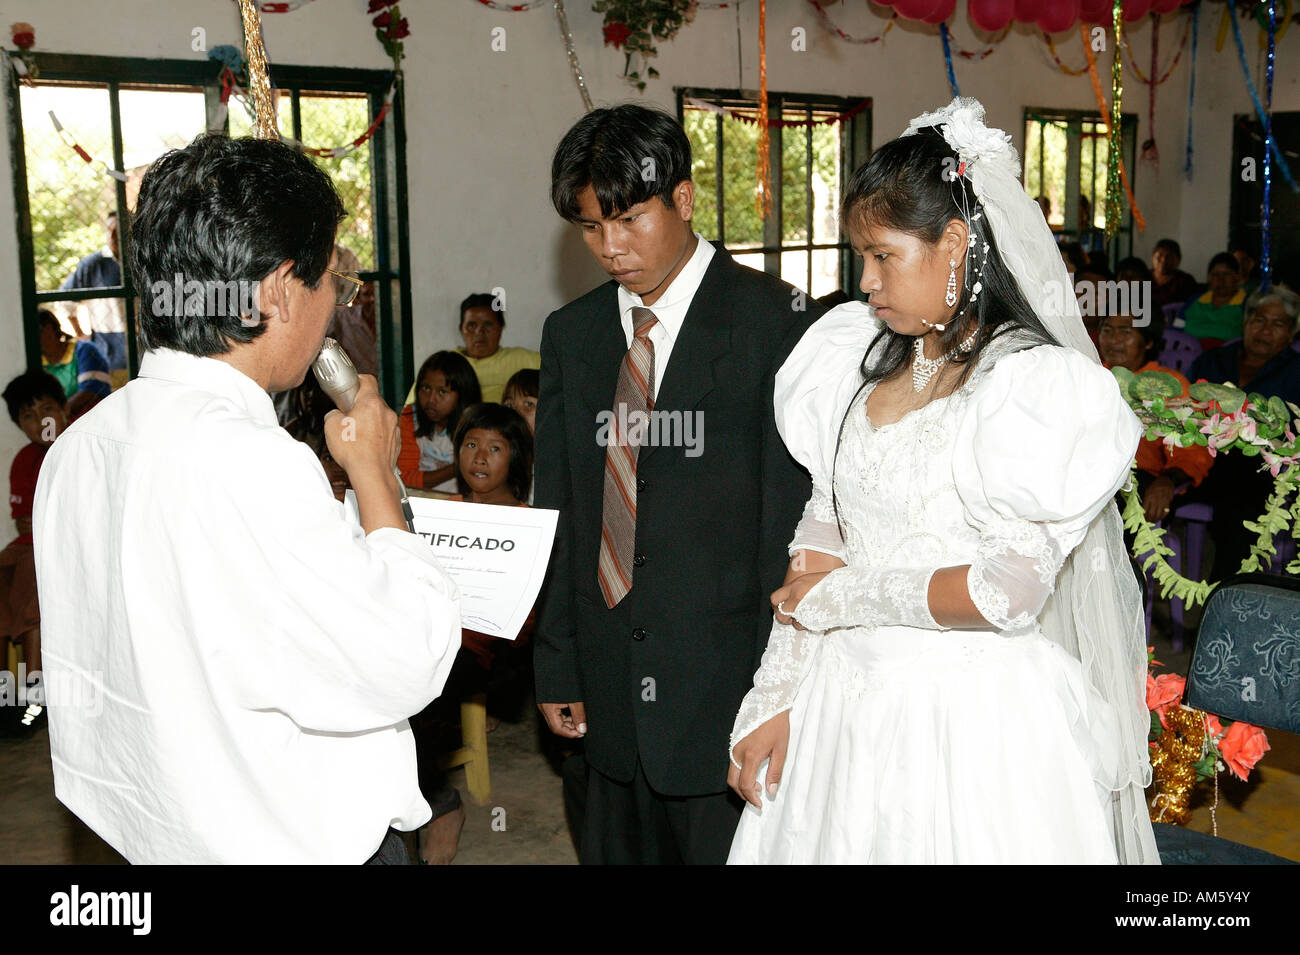 Coppia di sposi come ottenere il matrimonio documento matrimonio indiano, Loma Plata, Chaco, Paraguay, Sud America Foto Stock